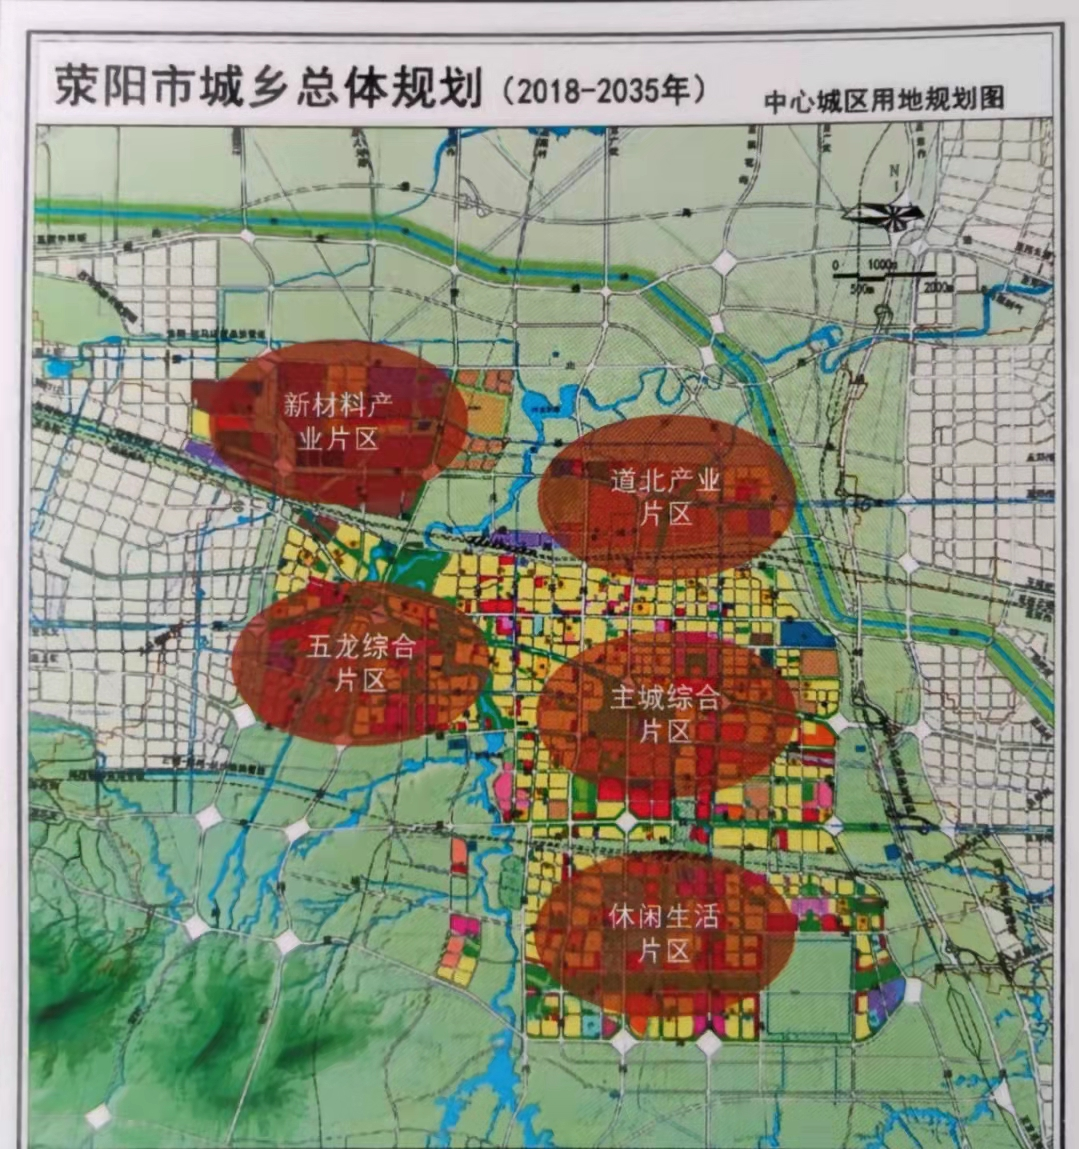 郑州区域规划价值解读——荥阳市